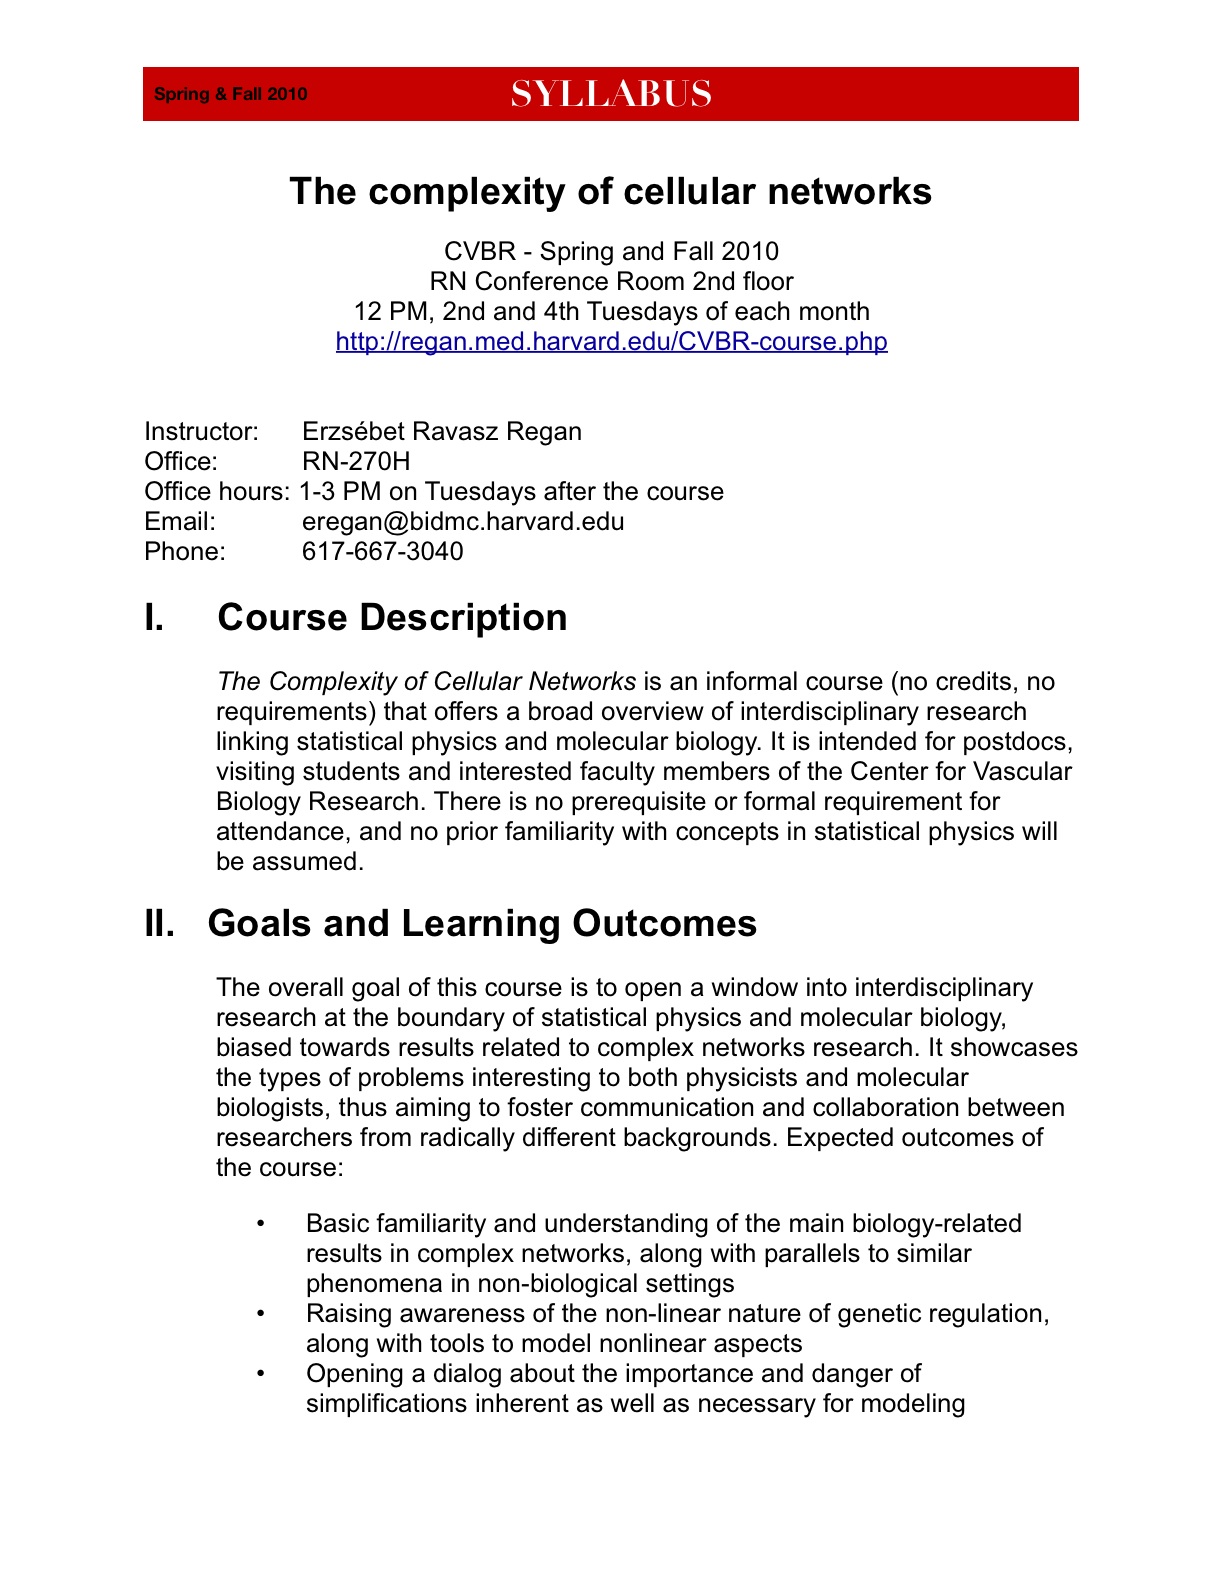 CVBR course syllabus (pdf)